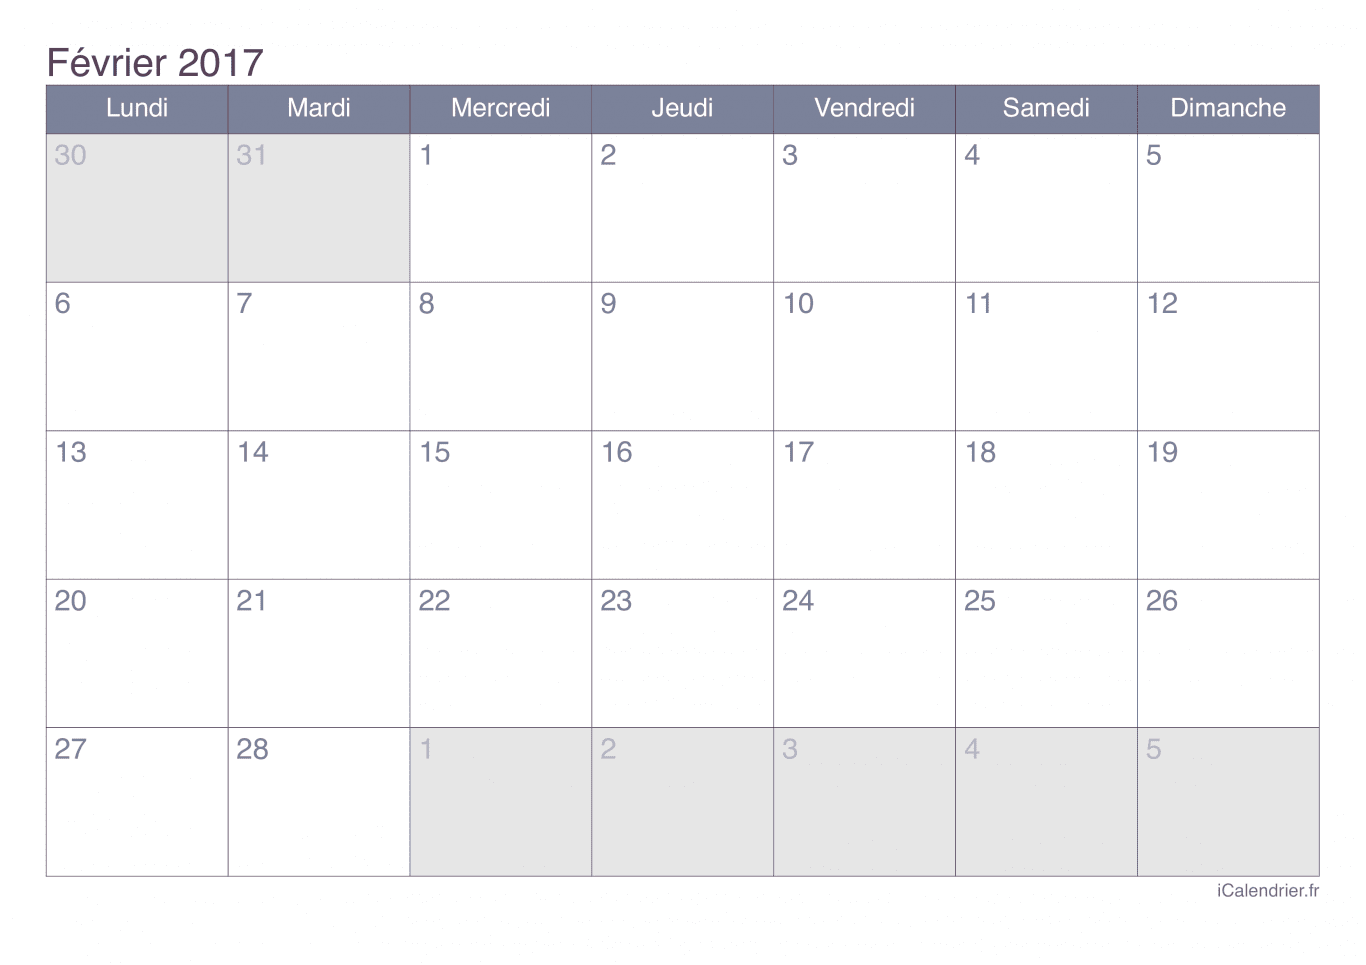 Calendrier de février 2017 - Office